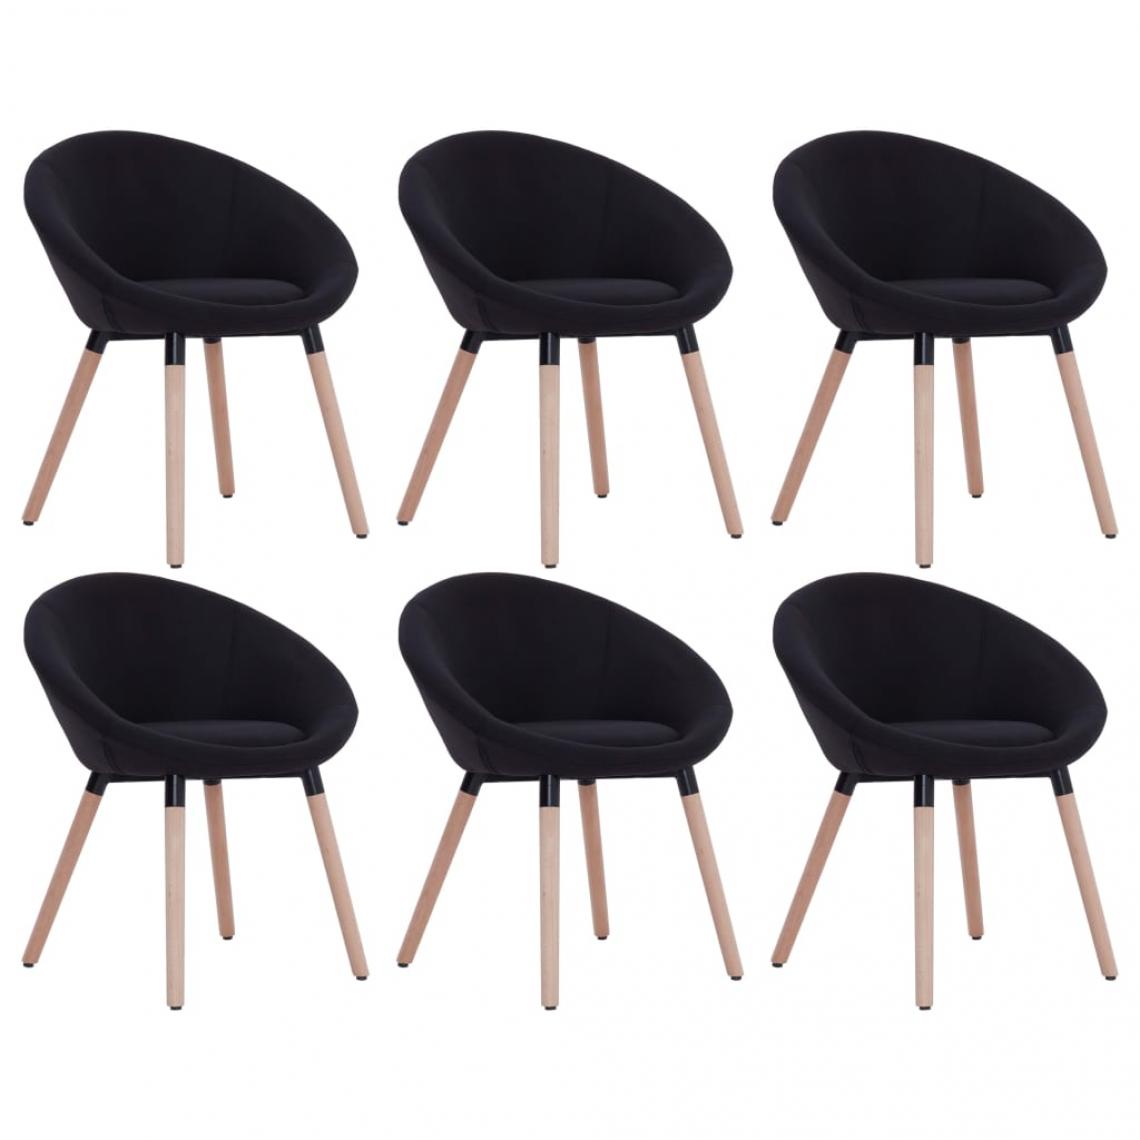 Decoshop26 - Lot de 6 chaises de salle à manger cuisine design contemporain tissu noir CDS022710 - Chaises